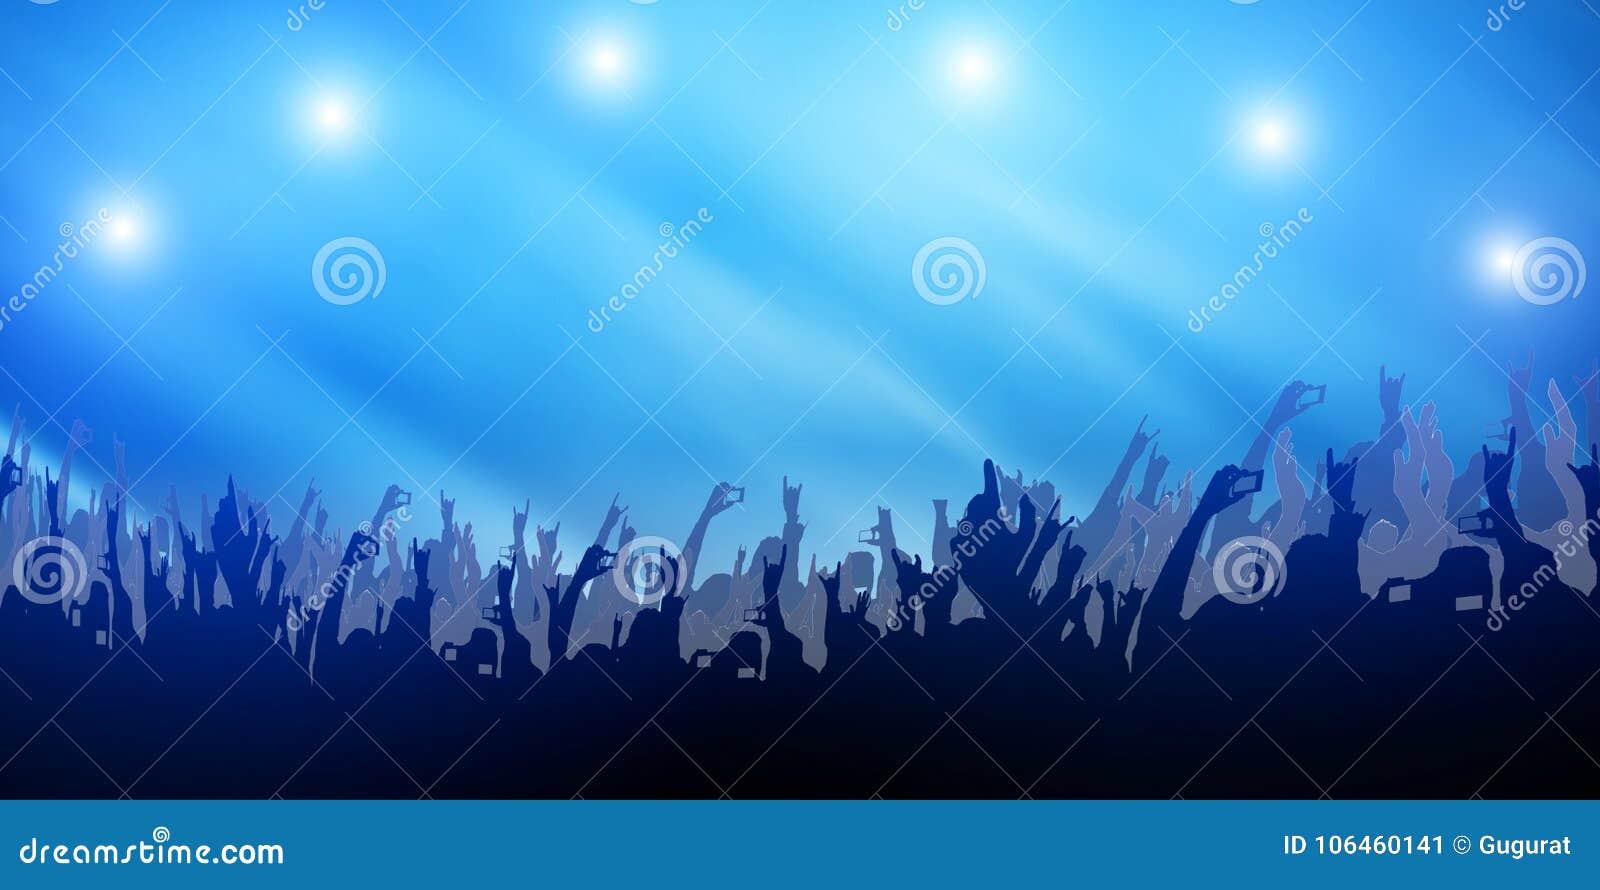 Background Music and Events. Mains agitées, la foule danse avec la musique,  éclairage violet et bleu. Ambiance de fête durant un Festival et Concert de  Musique. Stock Photo